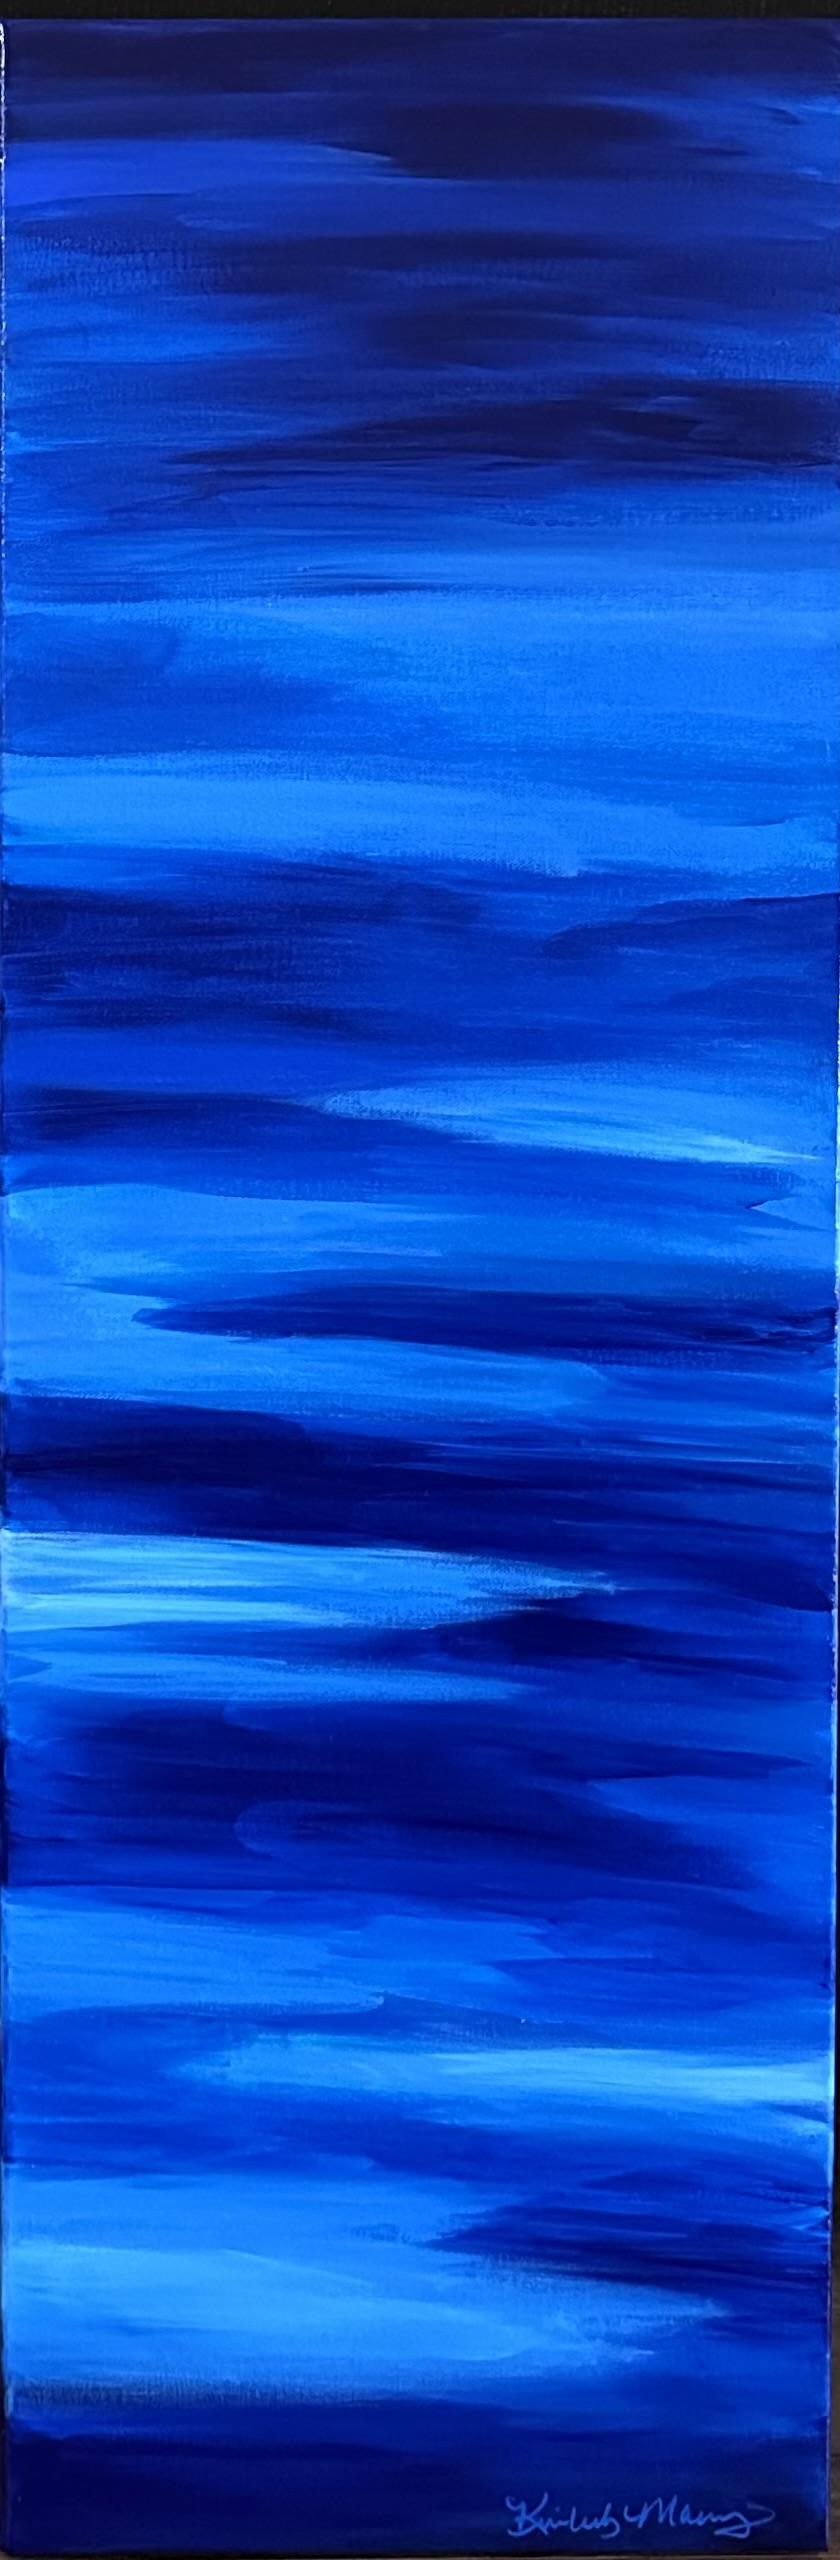 Blue Horizon #1 - Kimberly Marney